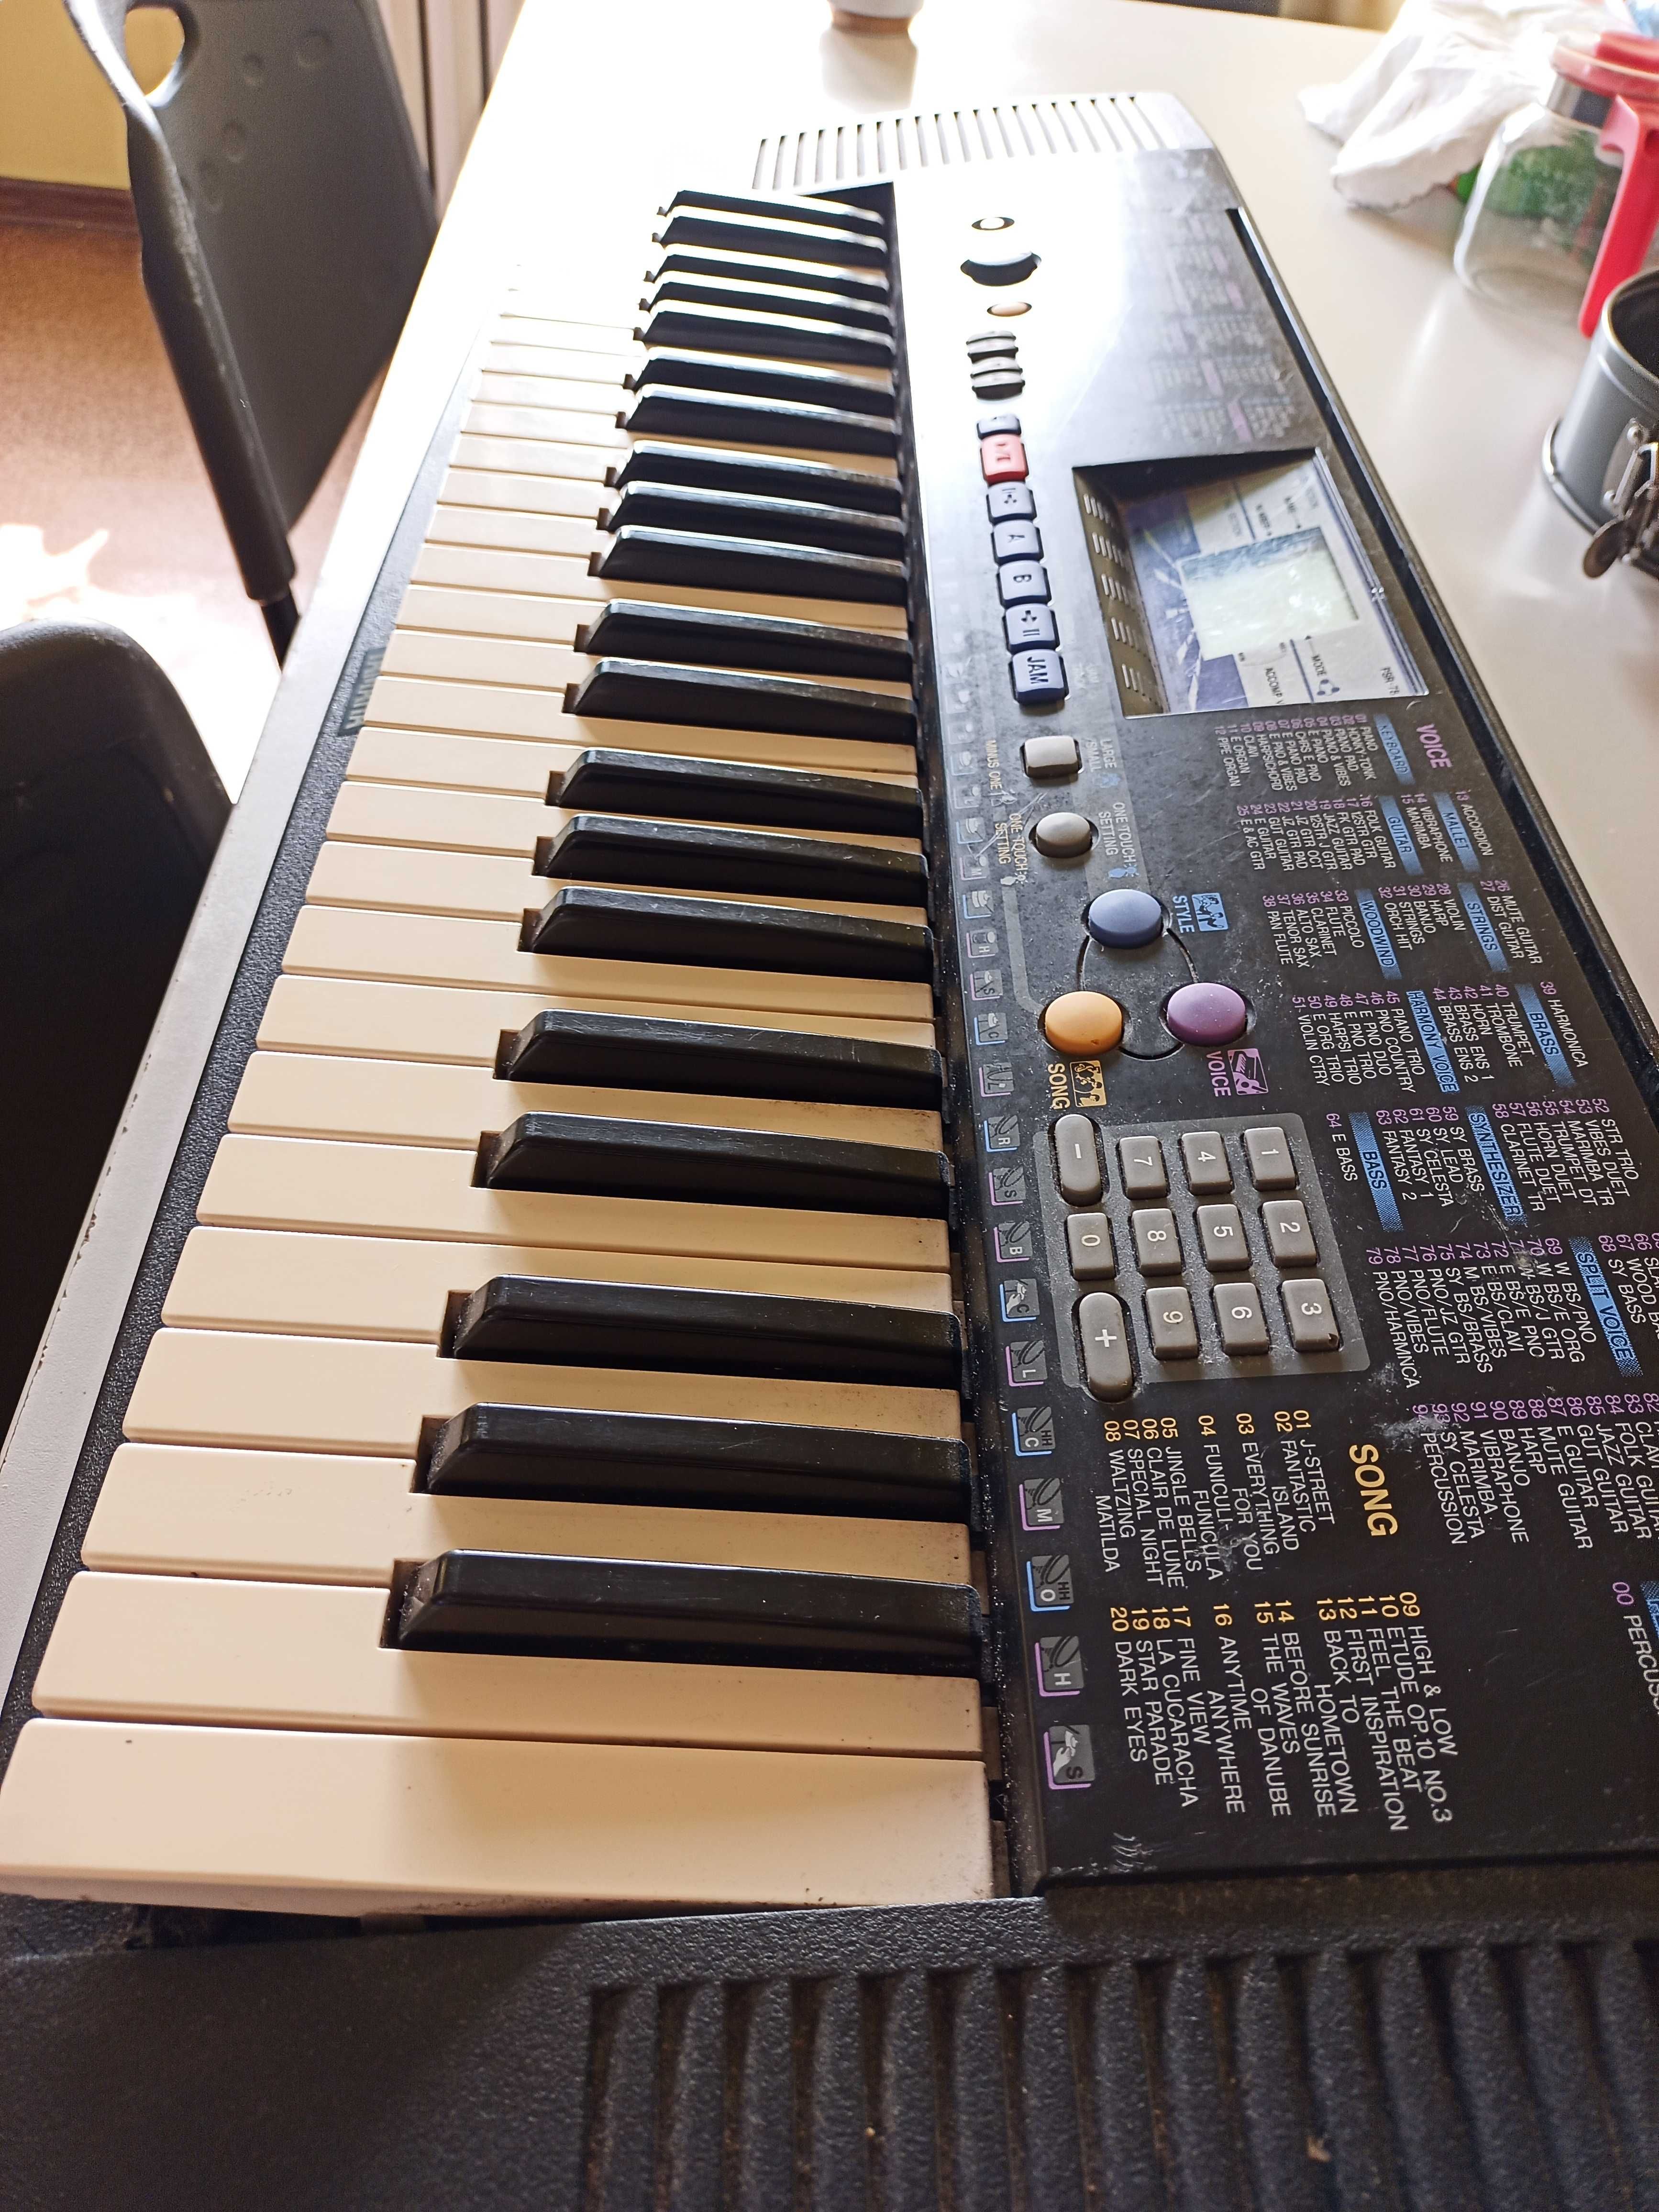 keyboard Yamaha psr-78